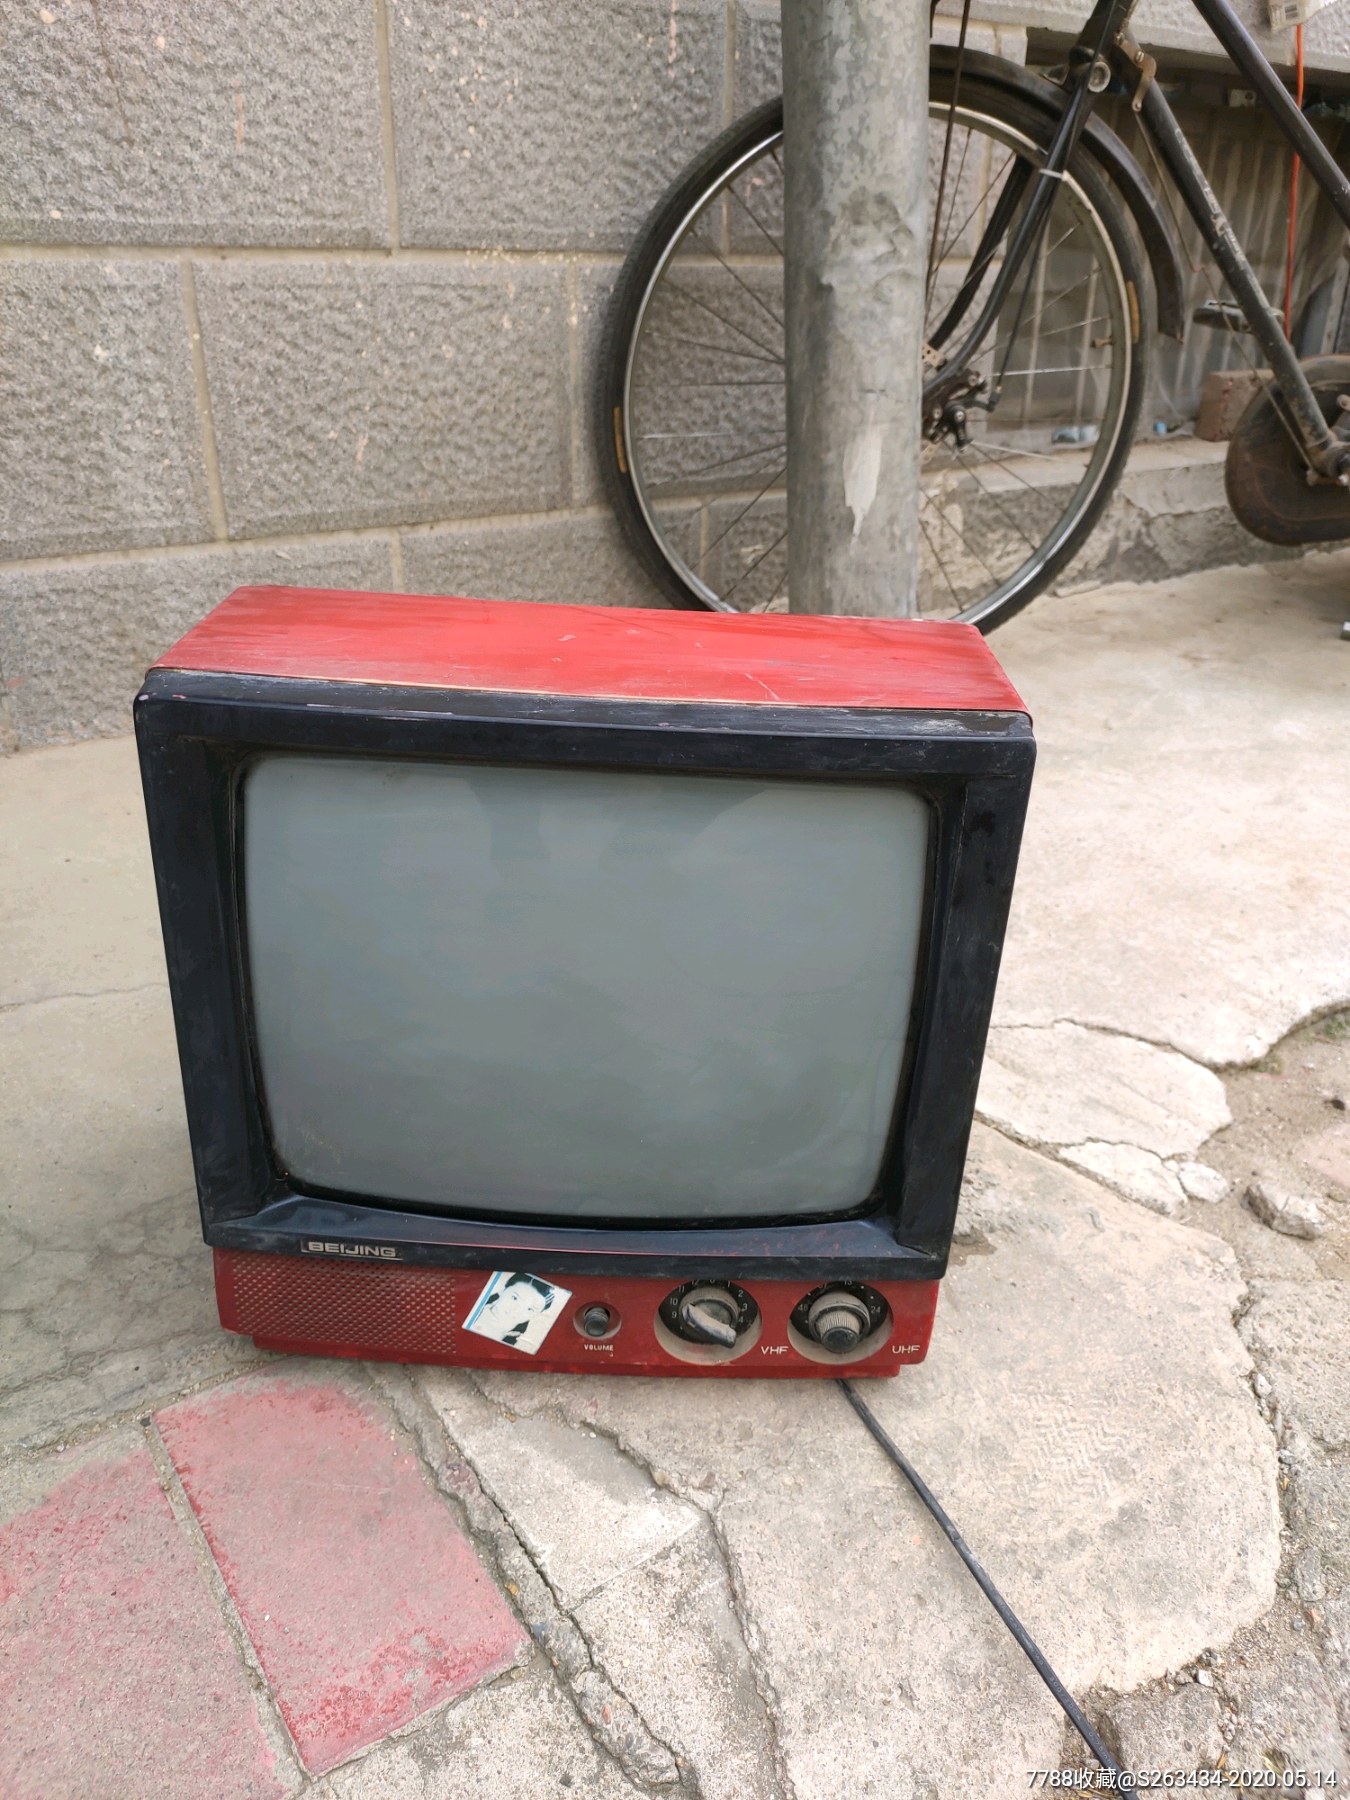 北京牌黑白电视机